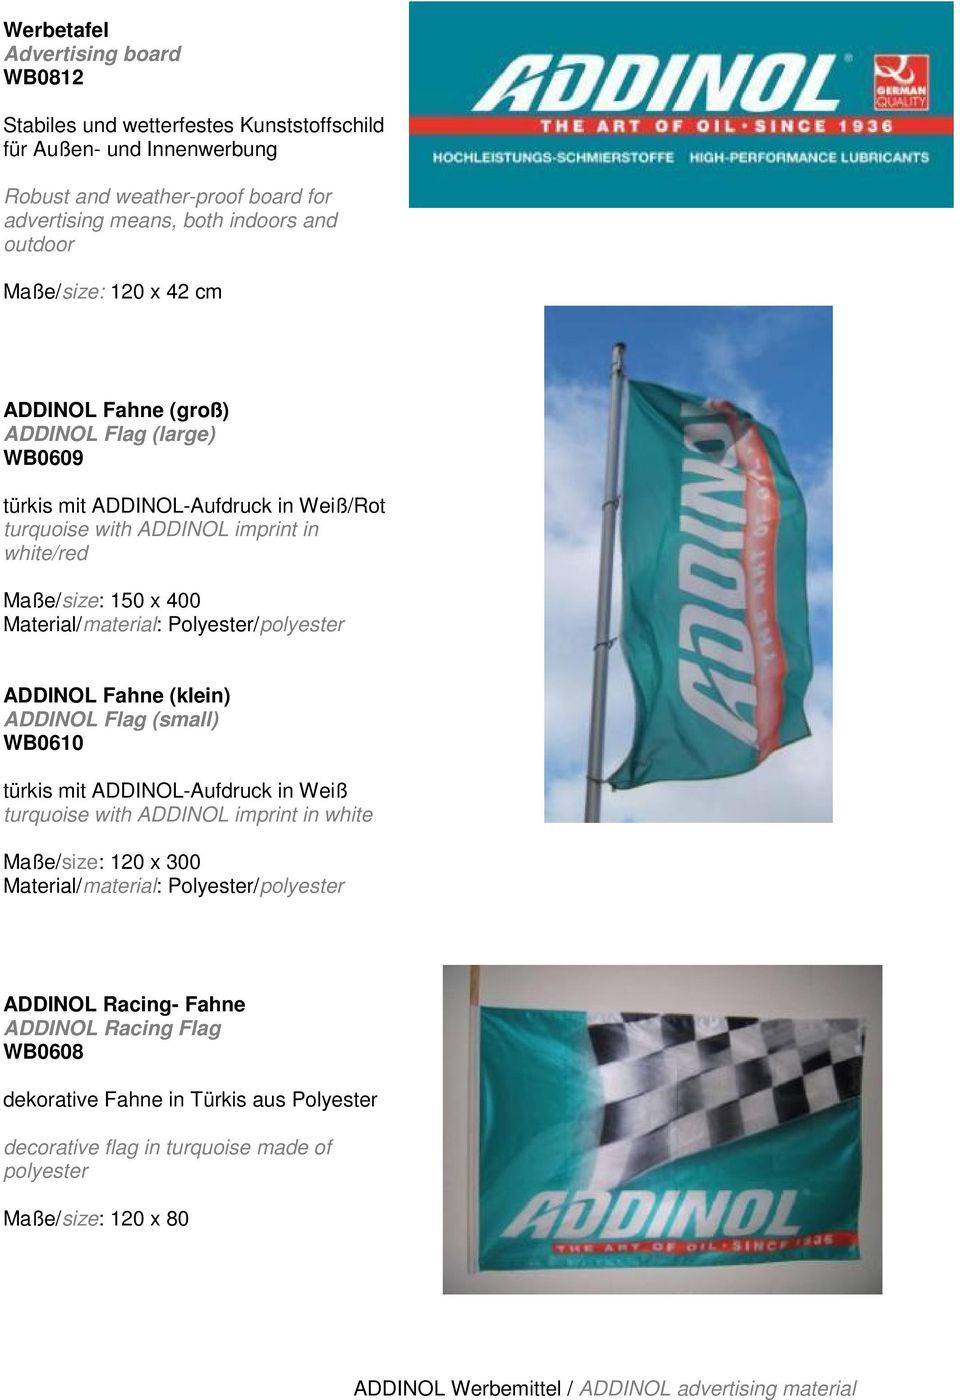 Material/material: Polyester/polyester ADDINOL Fahne (klein) ADDINOL Flag (small) WB0610 türkis mit ADDINOL-Aufdruck in Weiß turquoise with ADDINOL imprint in white Maße/size: 120 x 300